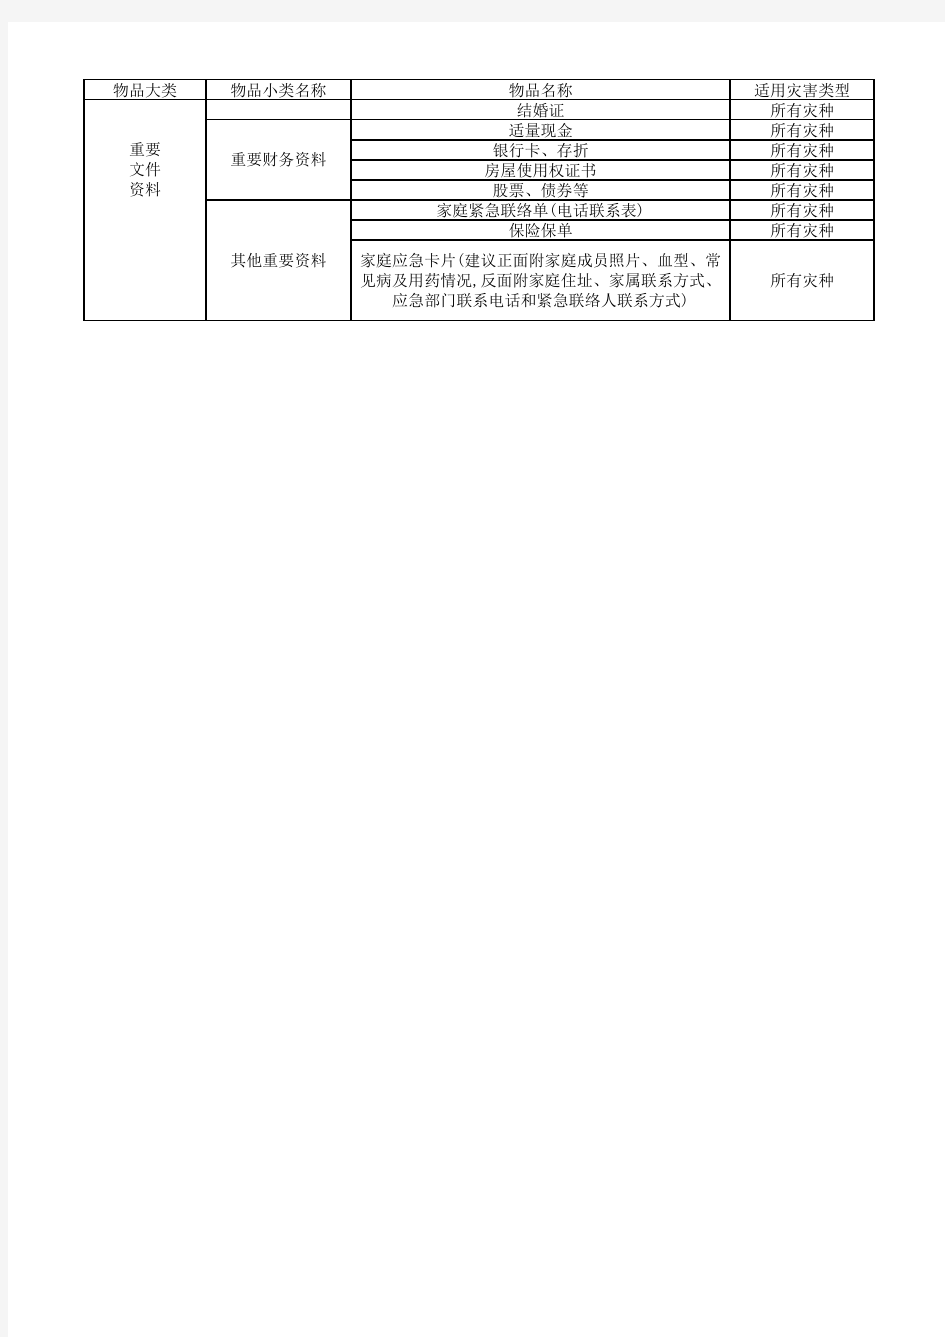 北京市家庭应急物资储备建议清单--基础版及扩充版